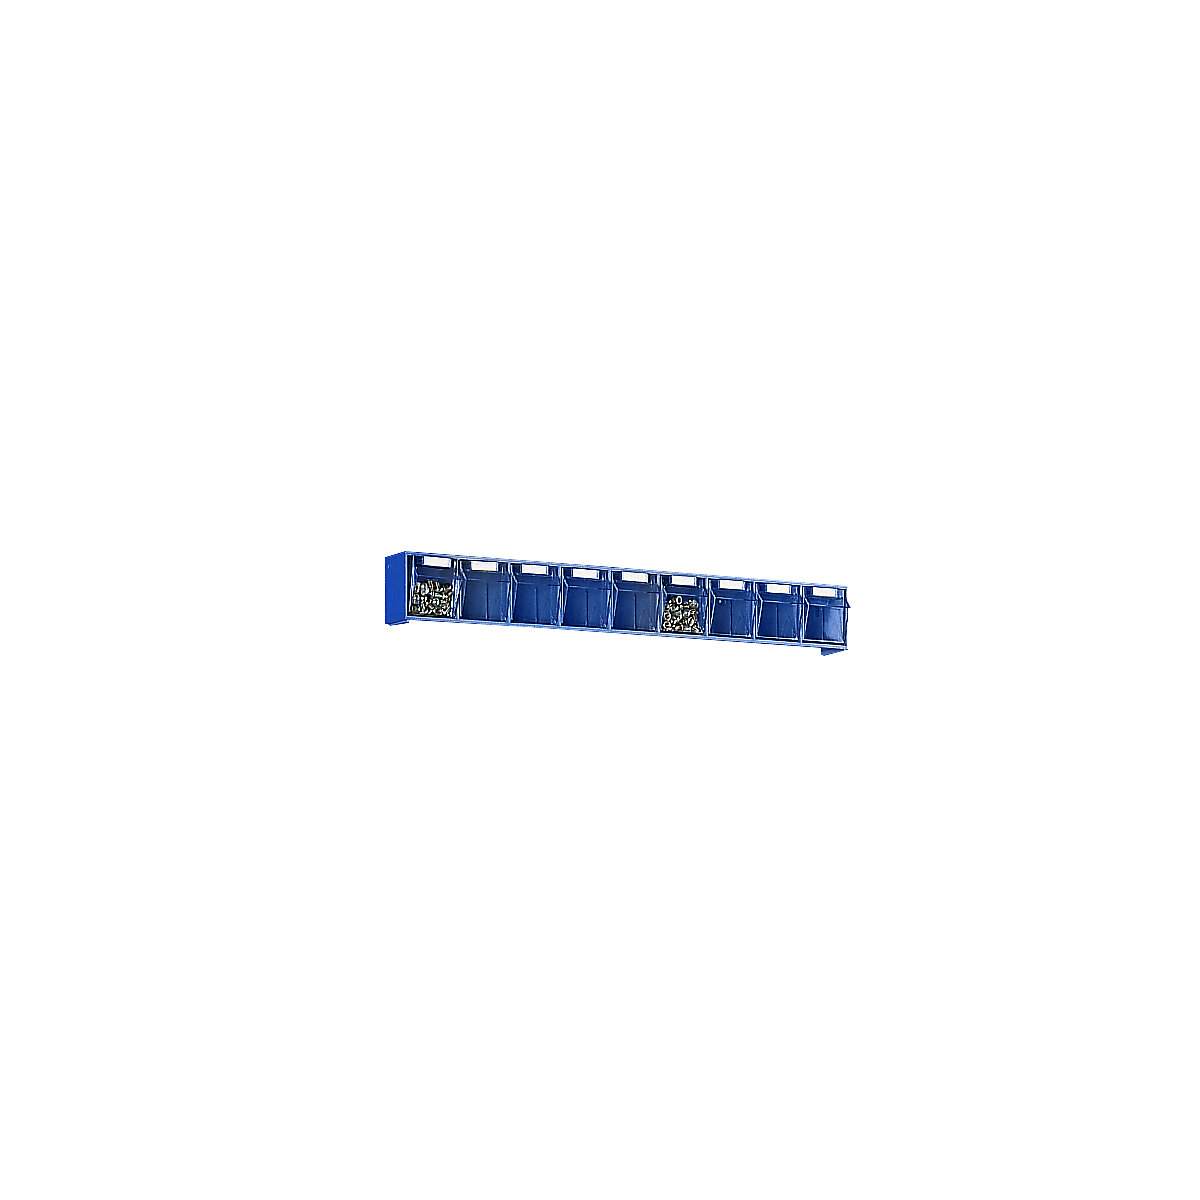 Kantelbaksysteem, kastframe h x b x d = 77 x 600 x 62 mm, 9 bakken, blauw-7